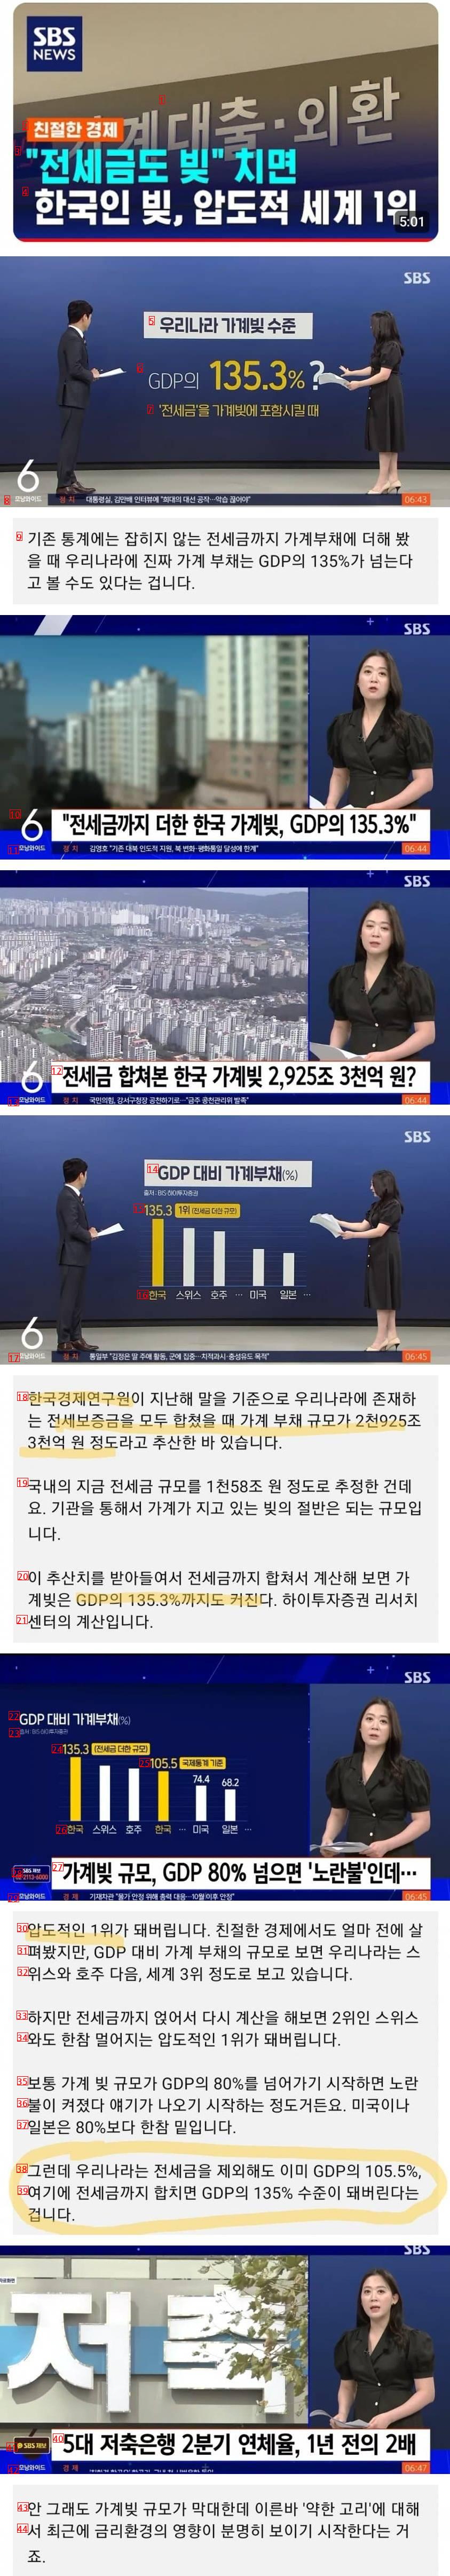 한국인 빚 압도적 세계 1위